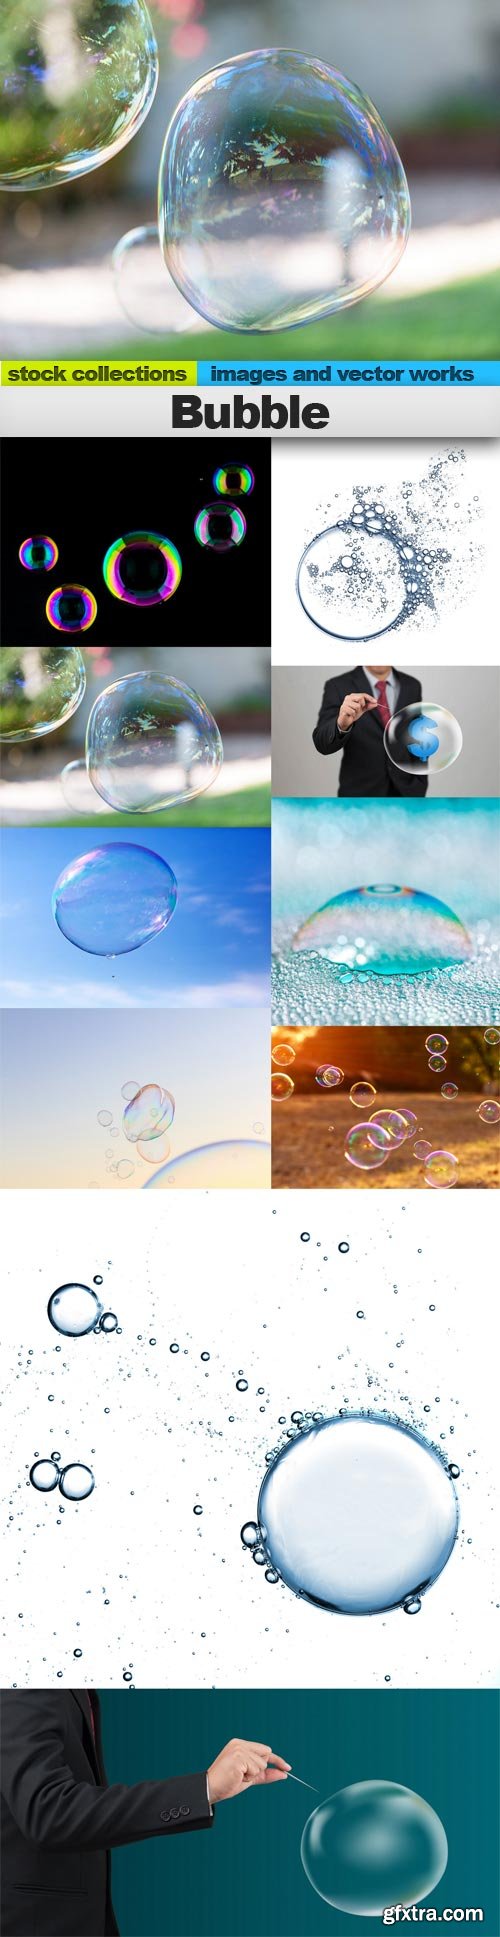 Bubble, 10 x UHQ JPEG